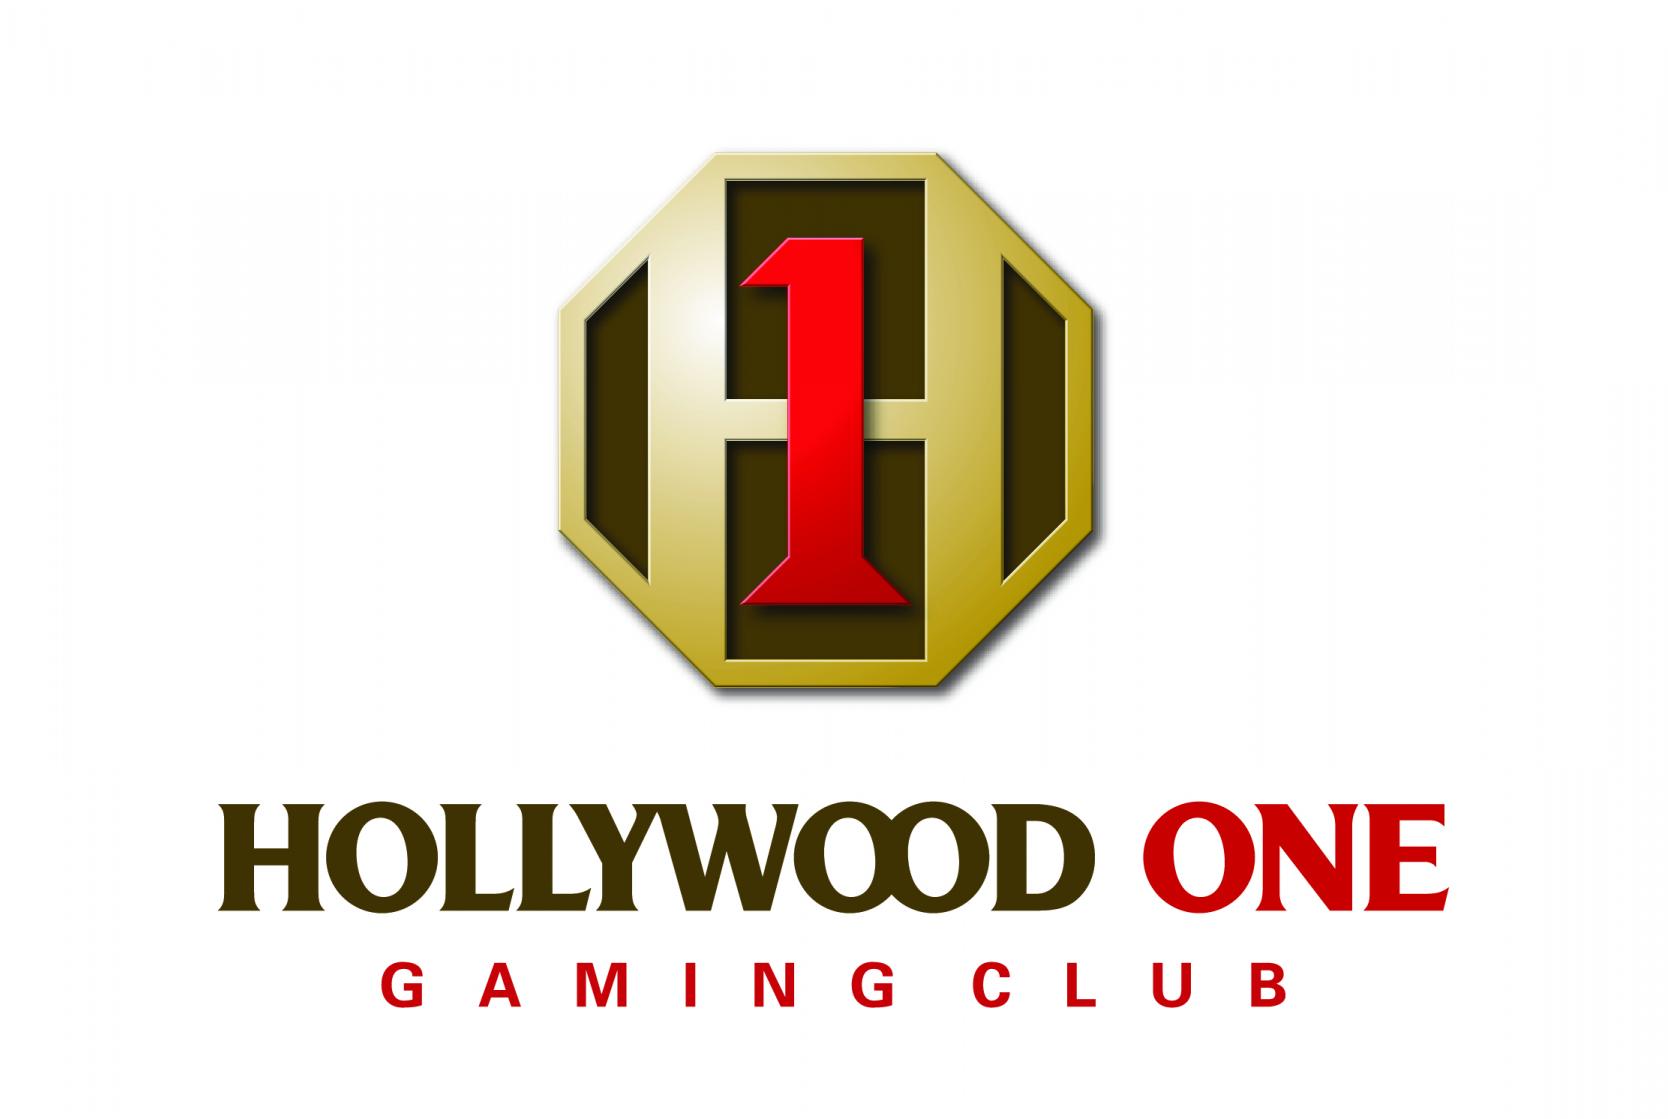 Hollywood One Gaming Club 